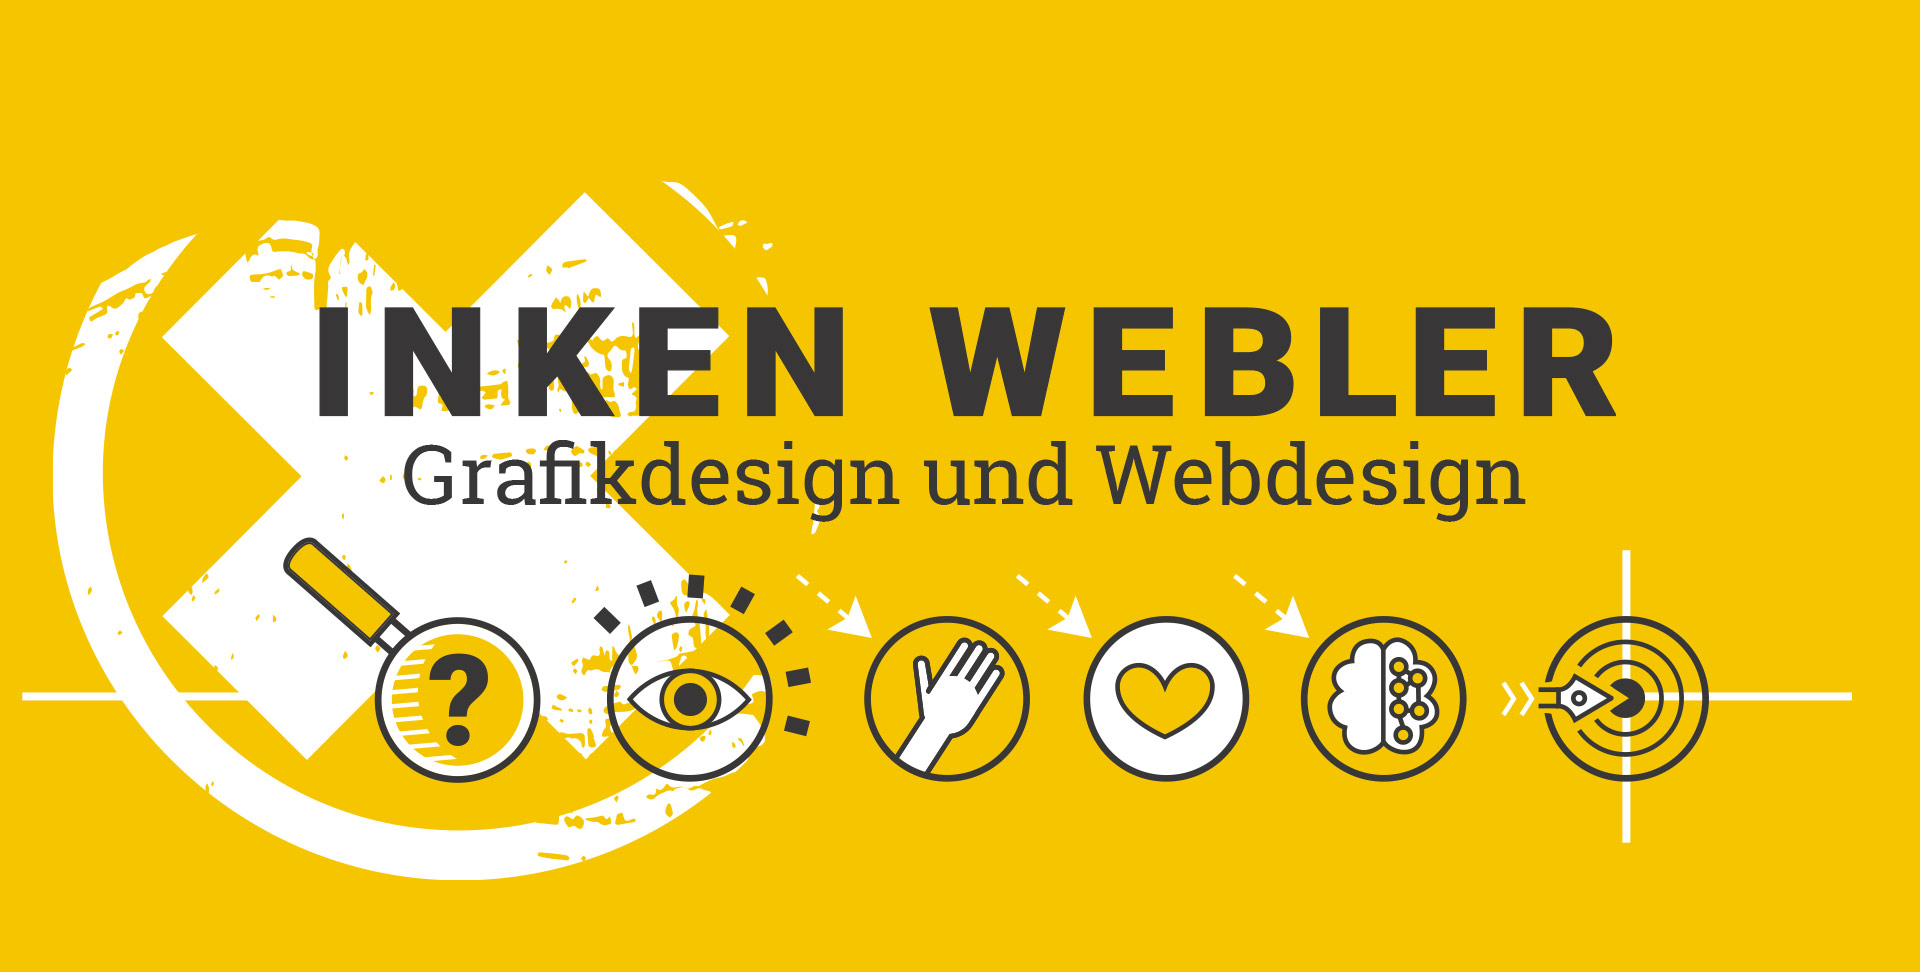 Schriftzug Inken Webler Grafik und Webdesign, darunter Icons, die den Designprozess symbolisieren, Lupe, Auge, Hand, Herz, Hirn und Zielscheibe